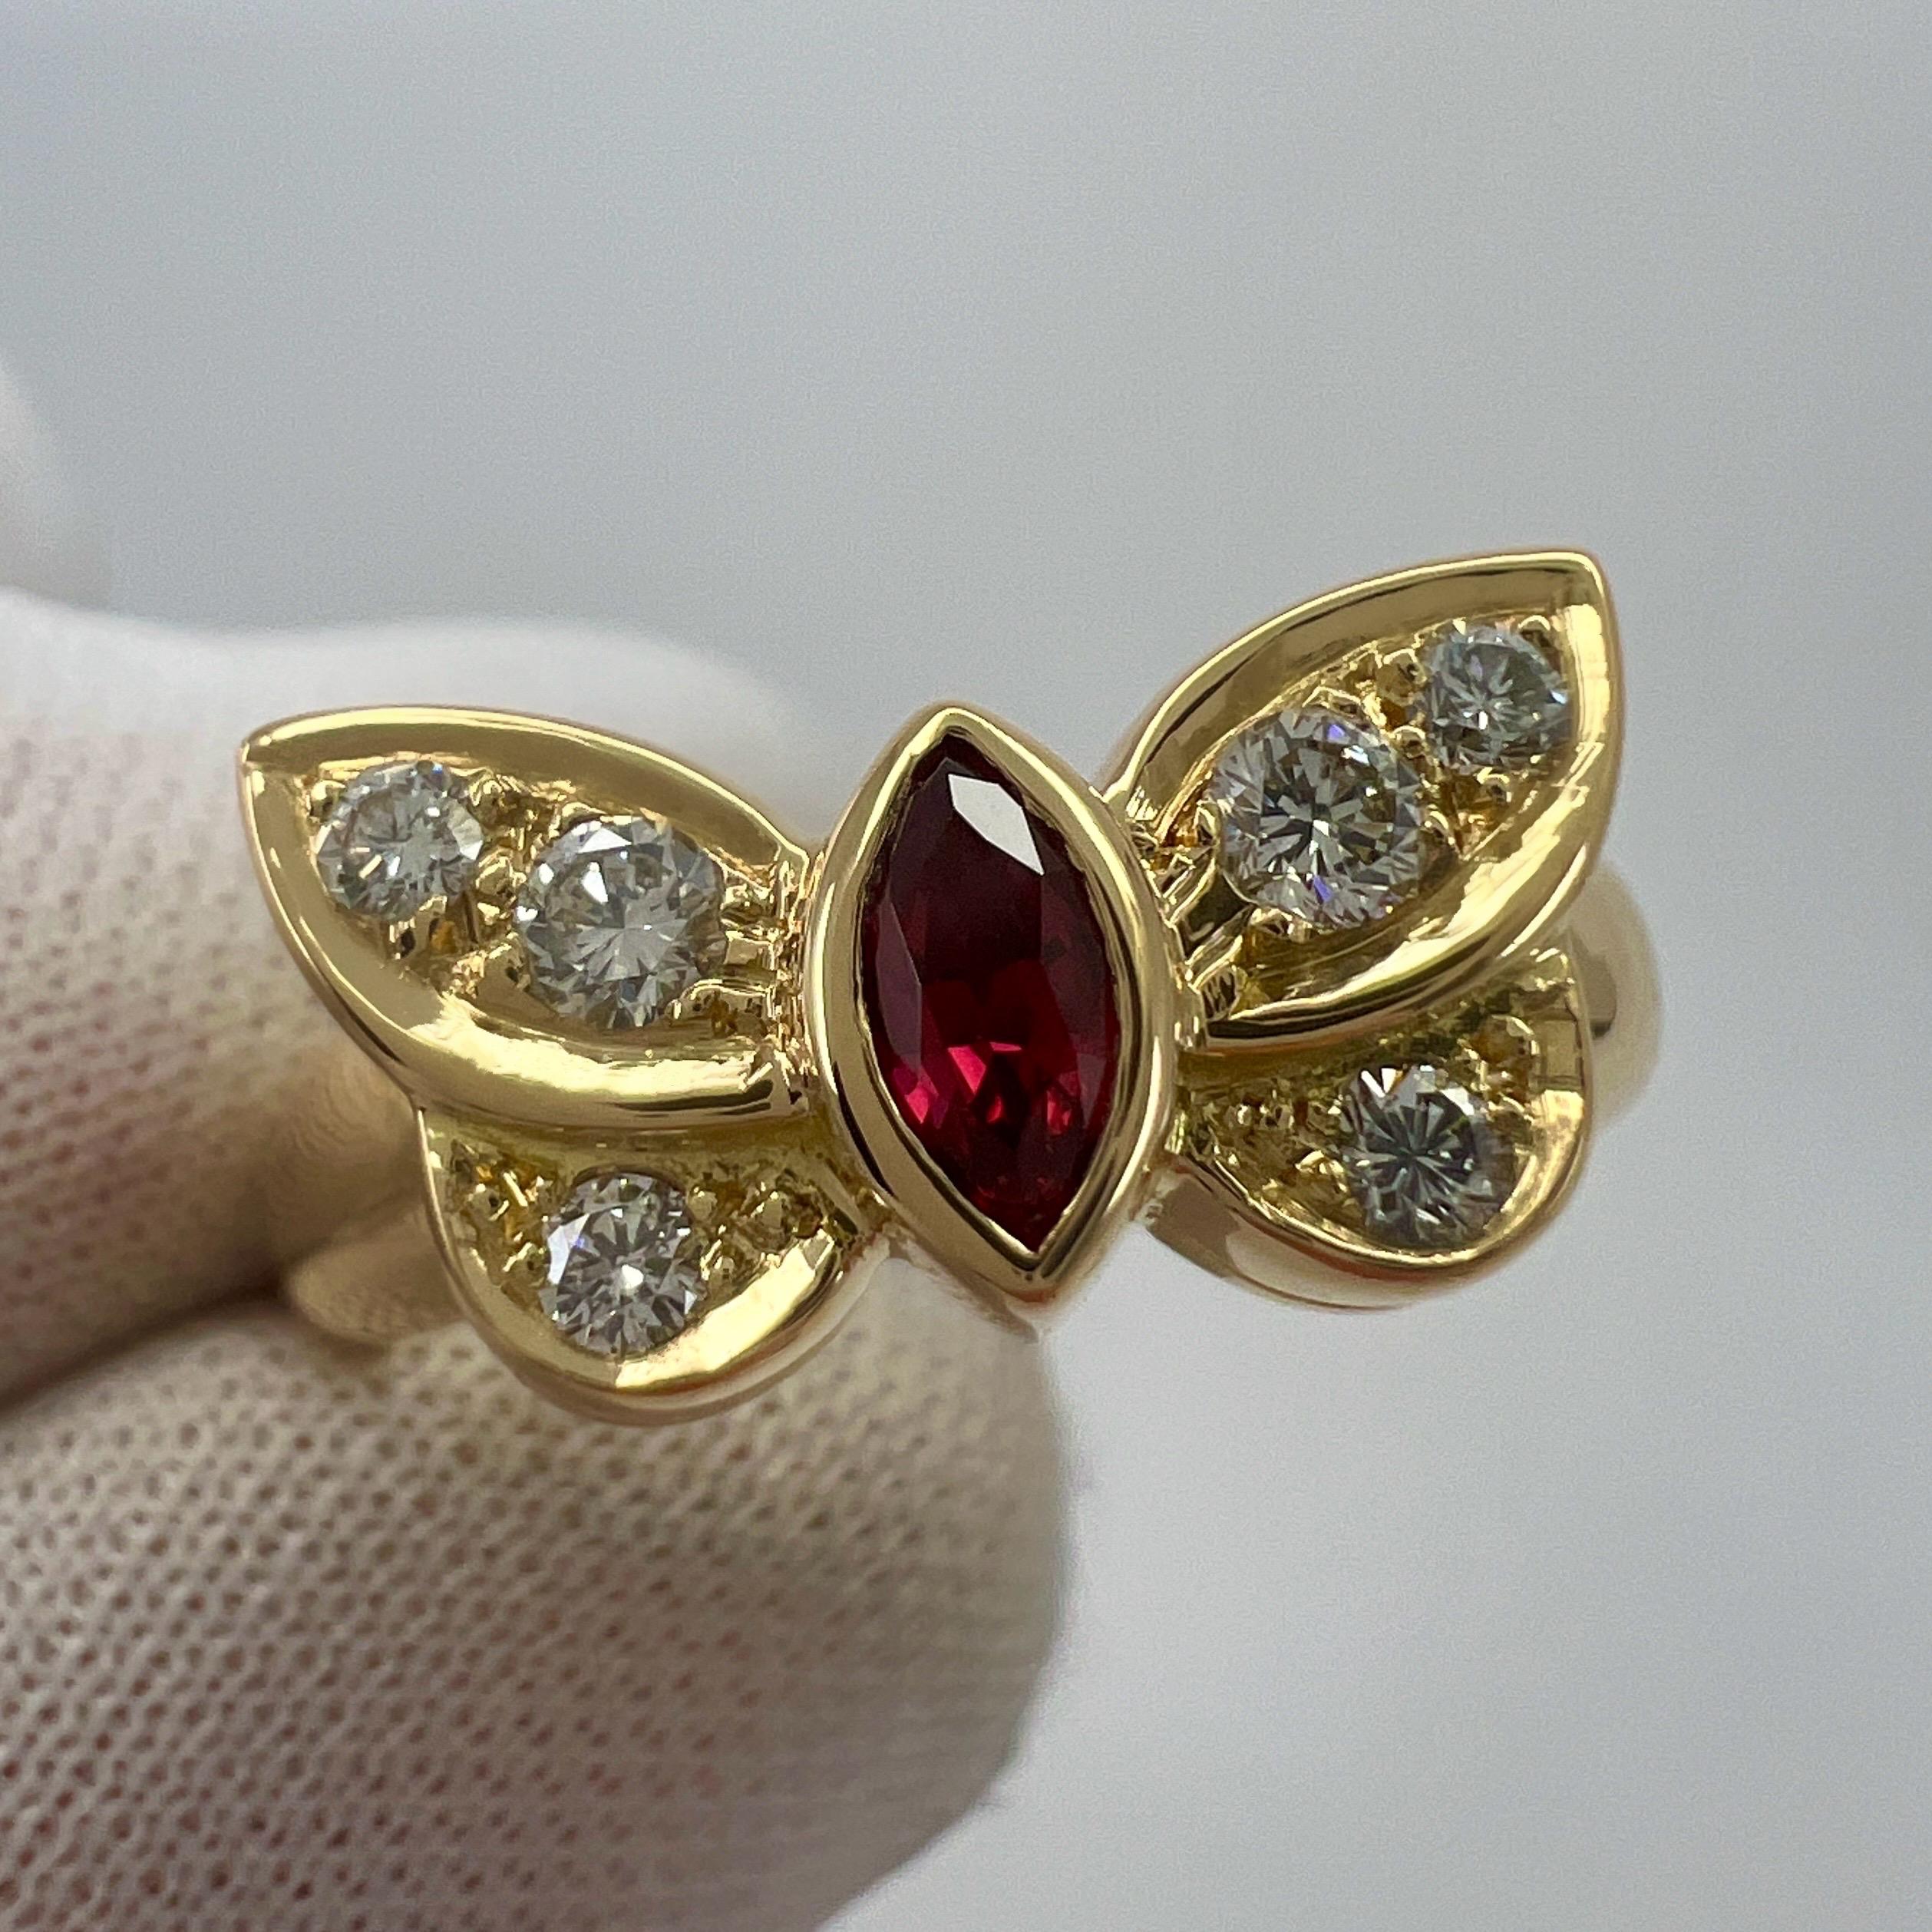 Seltene Vintage Van Cleef & Arpels Fein Rubin und Diamant 18k Gelbgold Ring.

Ein atemberaubender Vintage-Ring mit einem einzigartigen Design, das typisch für Van Cleef & Arpels ist. Er ist mit einem schönen roten Rubin im Marquise-Schliff besetzt,